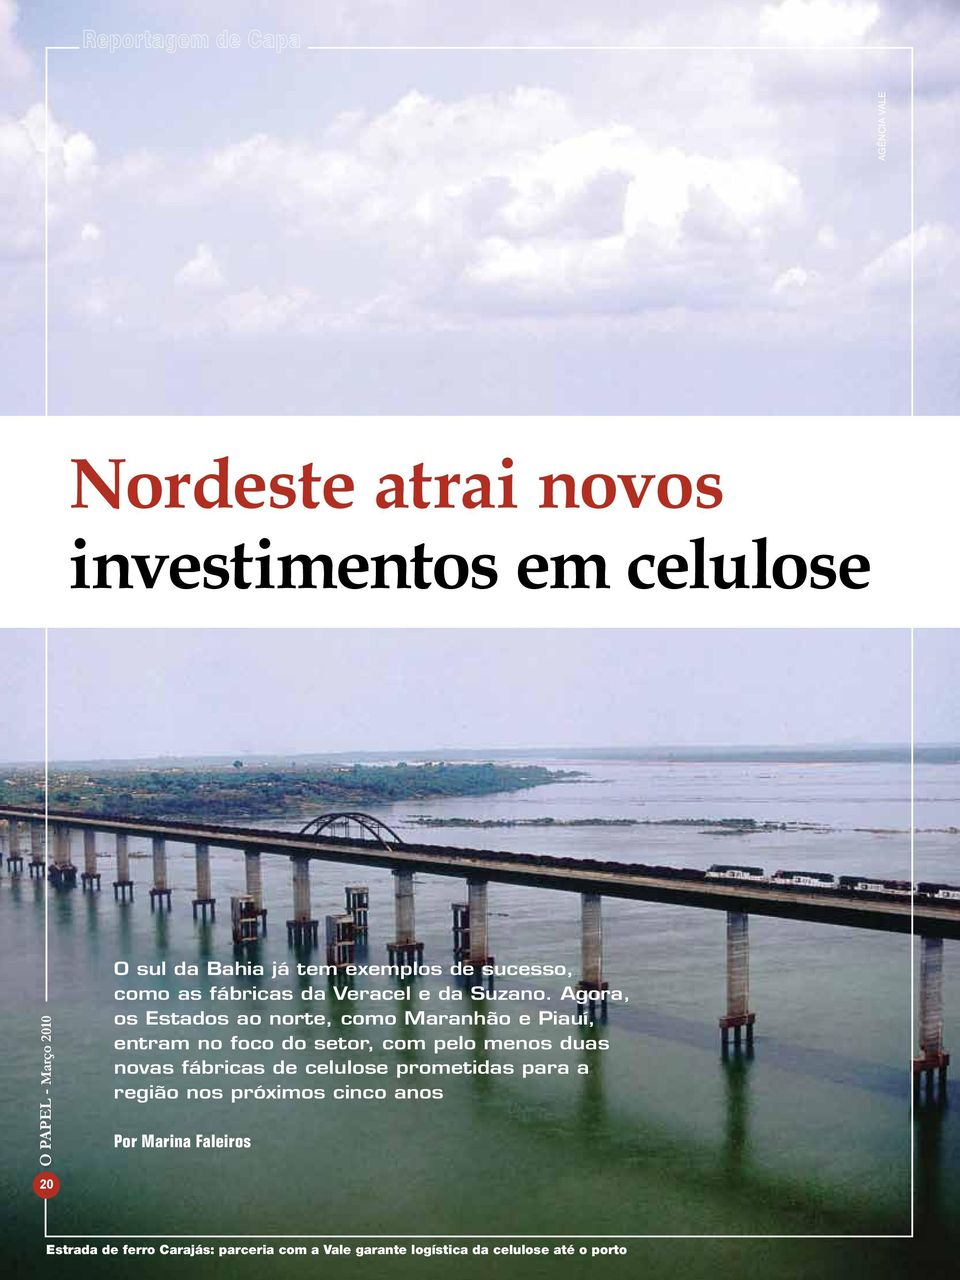 Agora, os Estados ao norte, como Maranhão e Piauí, entram no foco do setor, com pelo menos duas novas fábricas de